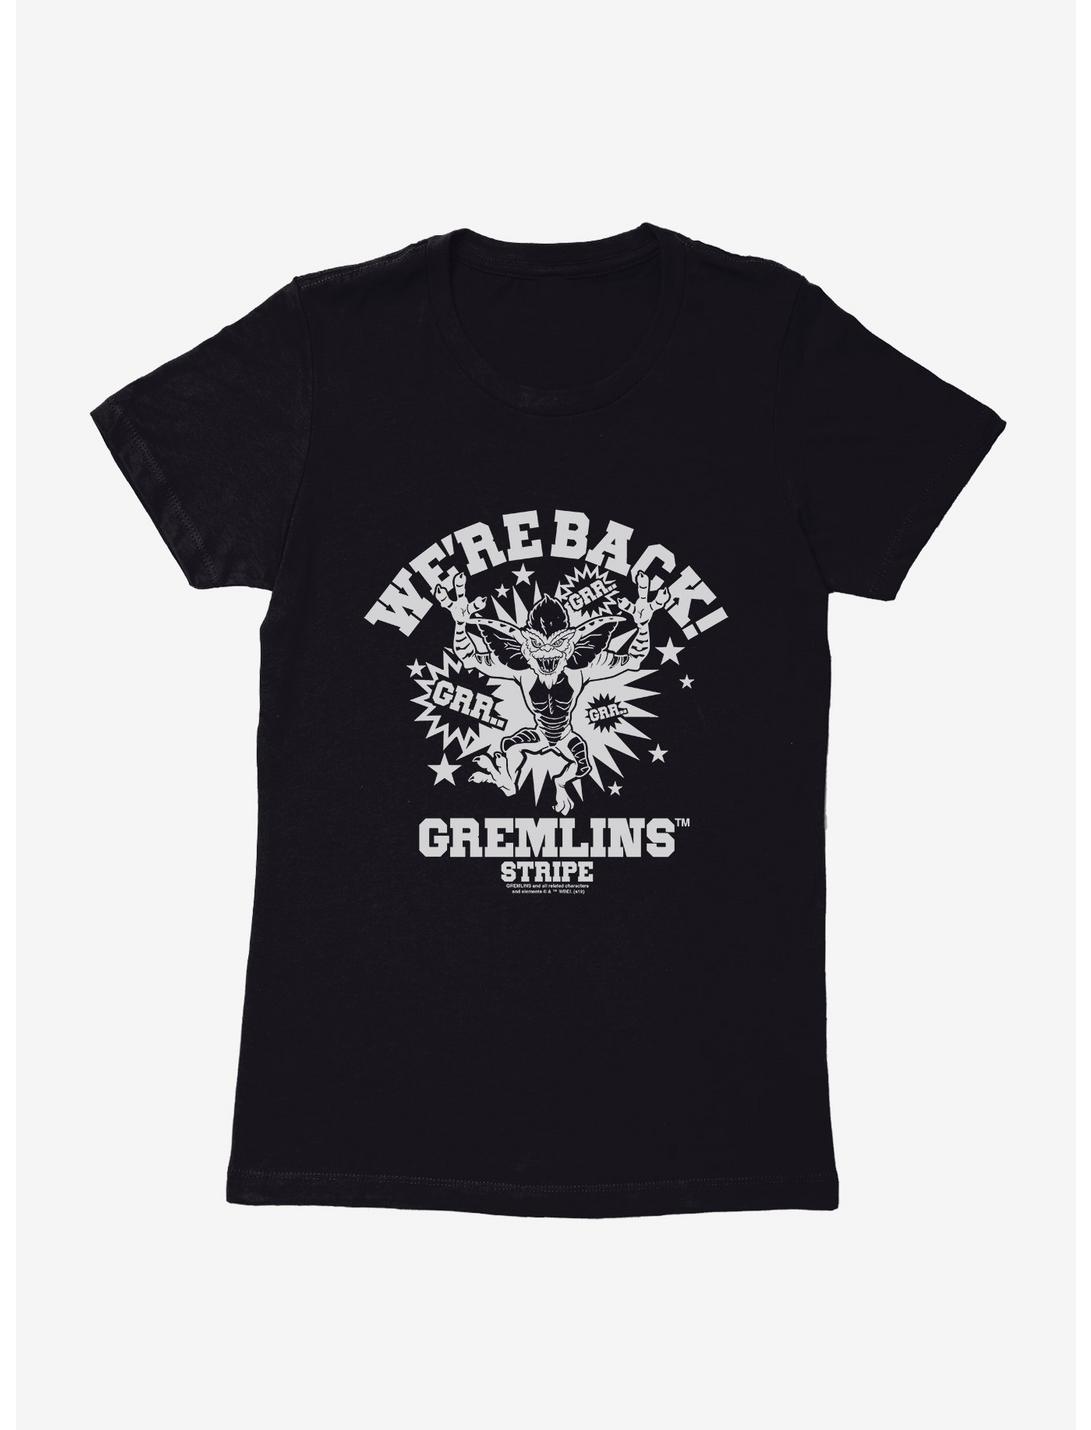 Gremlins We're Back Womens T-Shirt, BLACK, hi-res